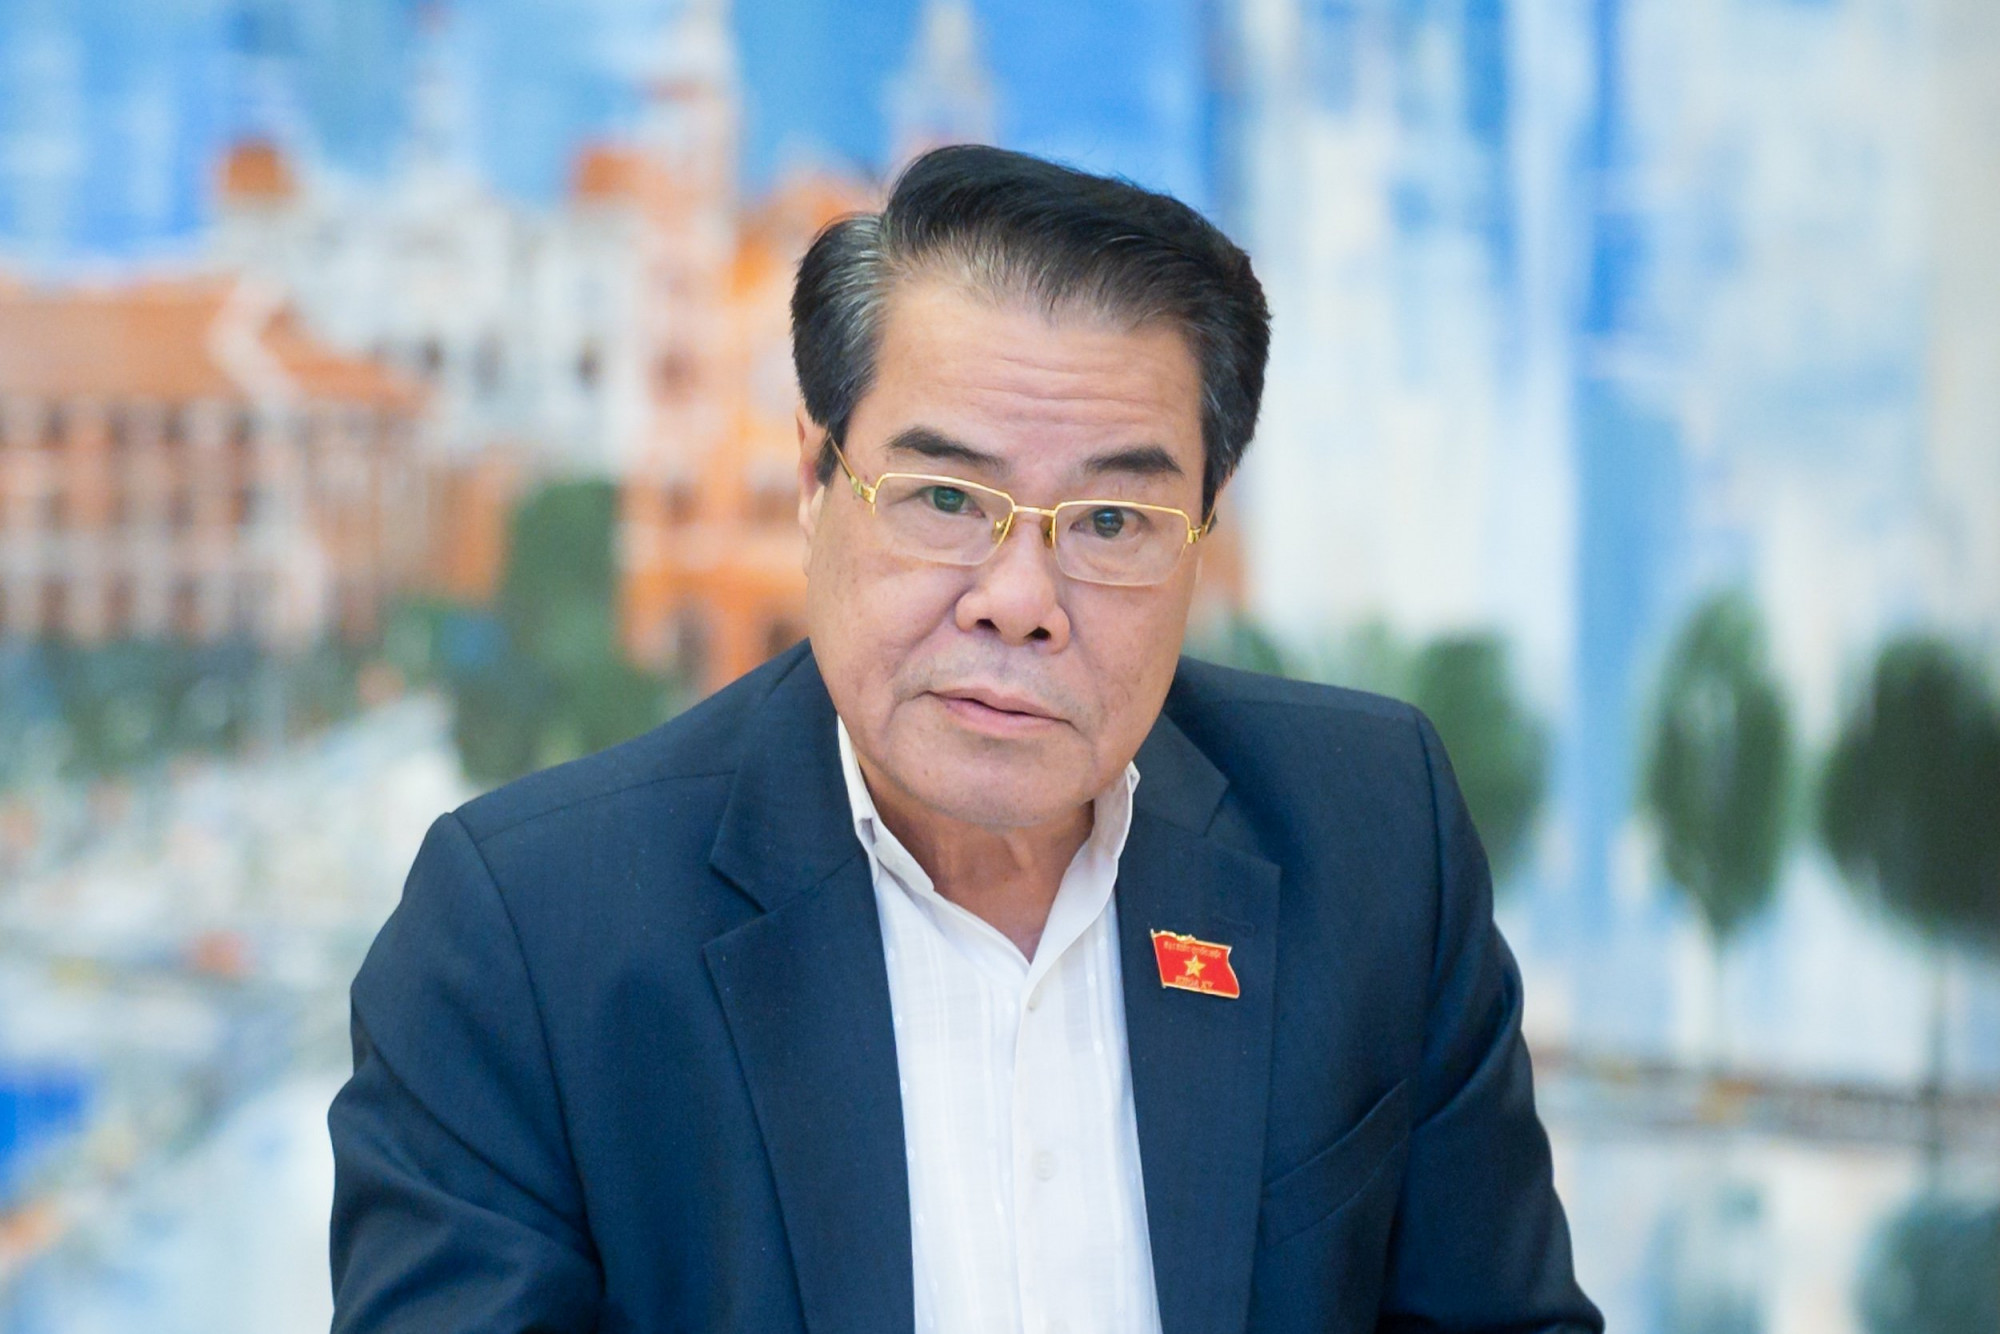 Trưởng Ban dân nguyện Dương Thanh Bình cho biết, cử tri lo lắng về tình trạng lừa đảo phụ huynh có con nhập viện cấp cứu để chiếm đoạt tài sản